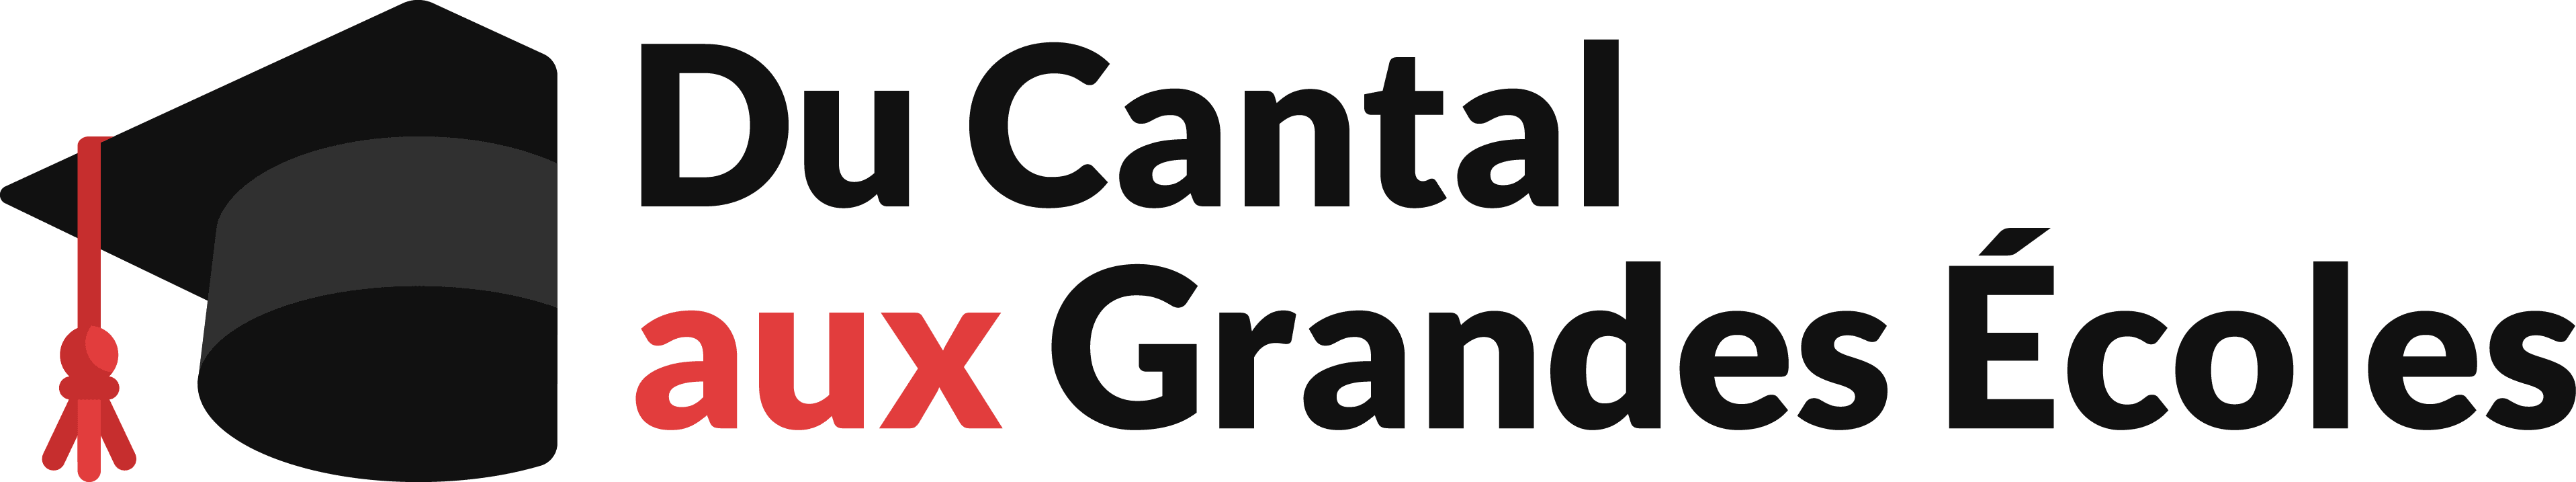 Cantal Grandes Ecoles